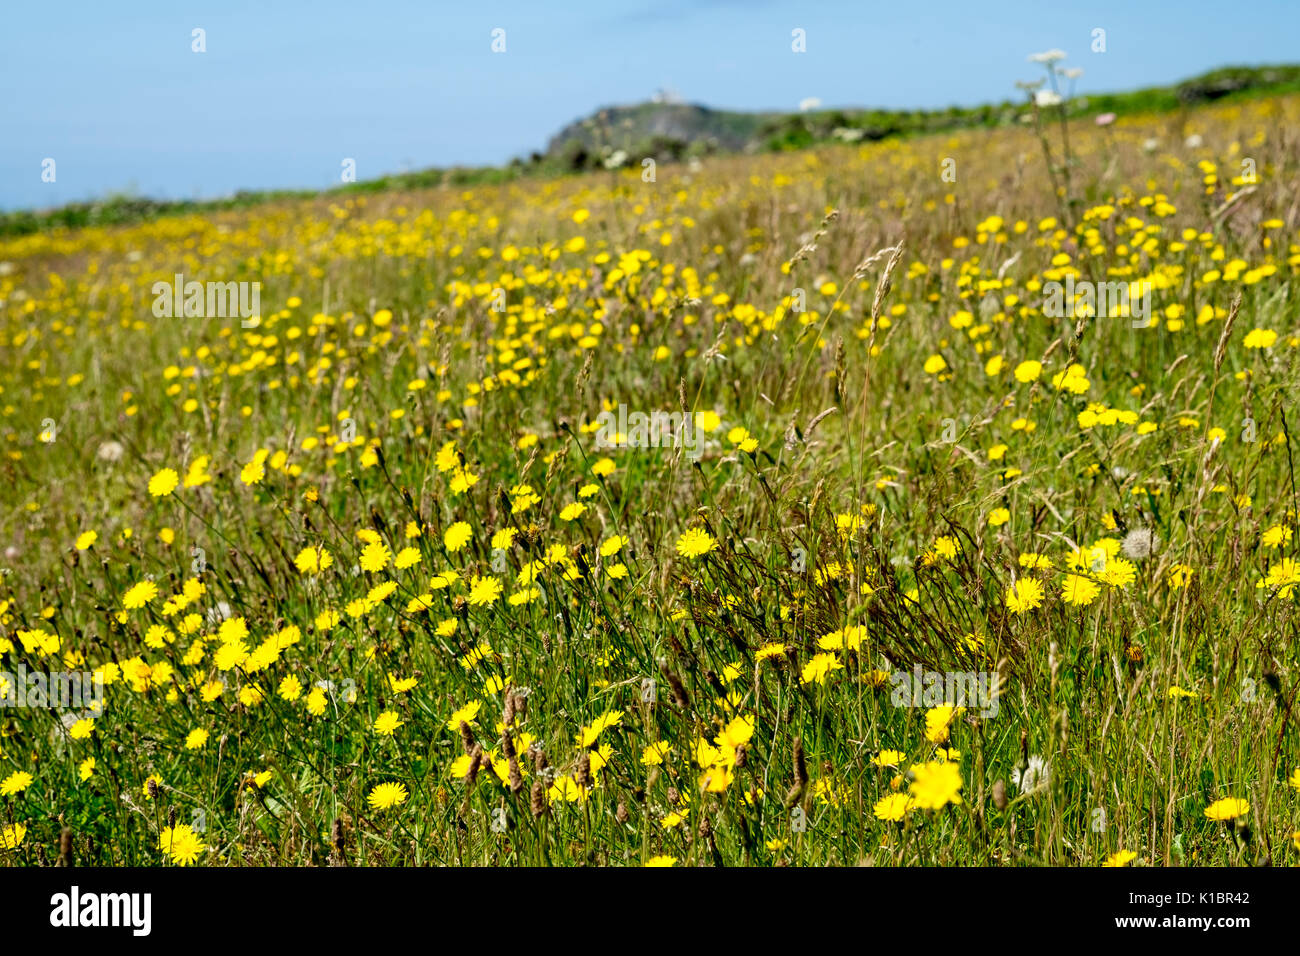 Hypochaeris radicata, Catsear, growing in fields in South devon Stock Photo